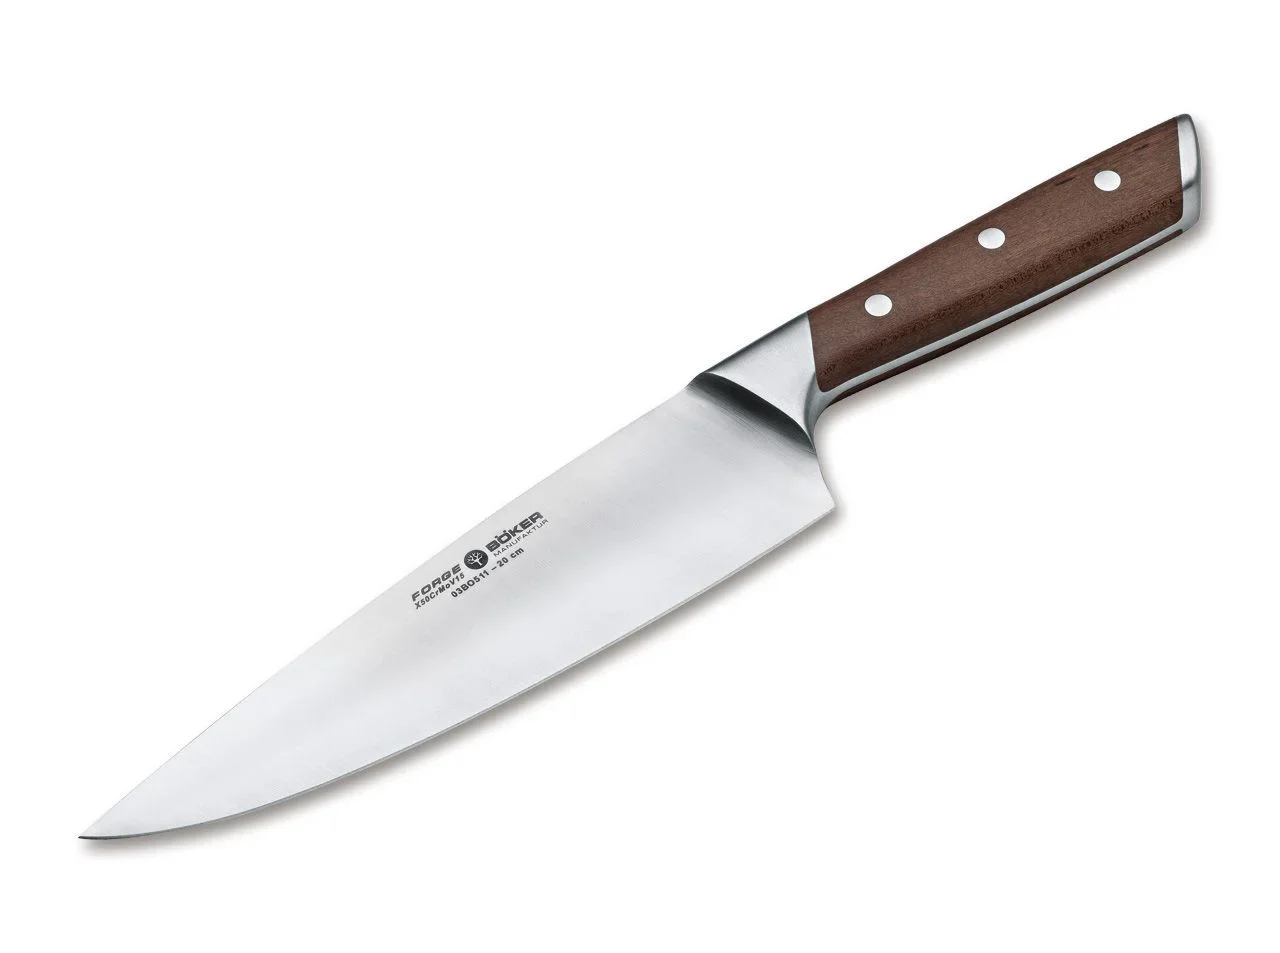 Messer, Taschenmesser, Kochmesser kaufen ➤ Messer-Maxx